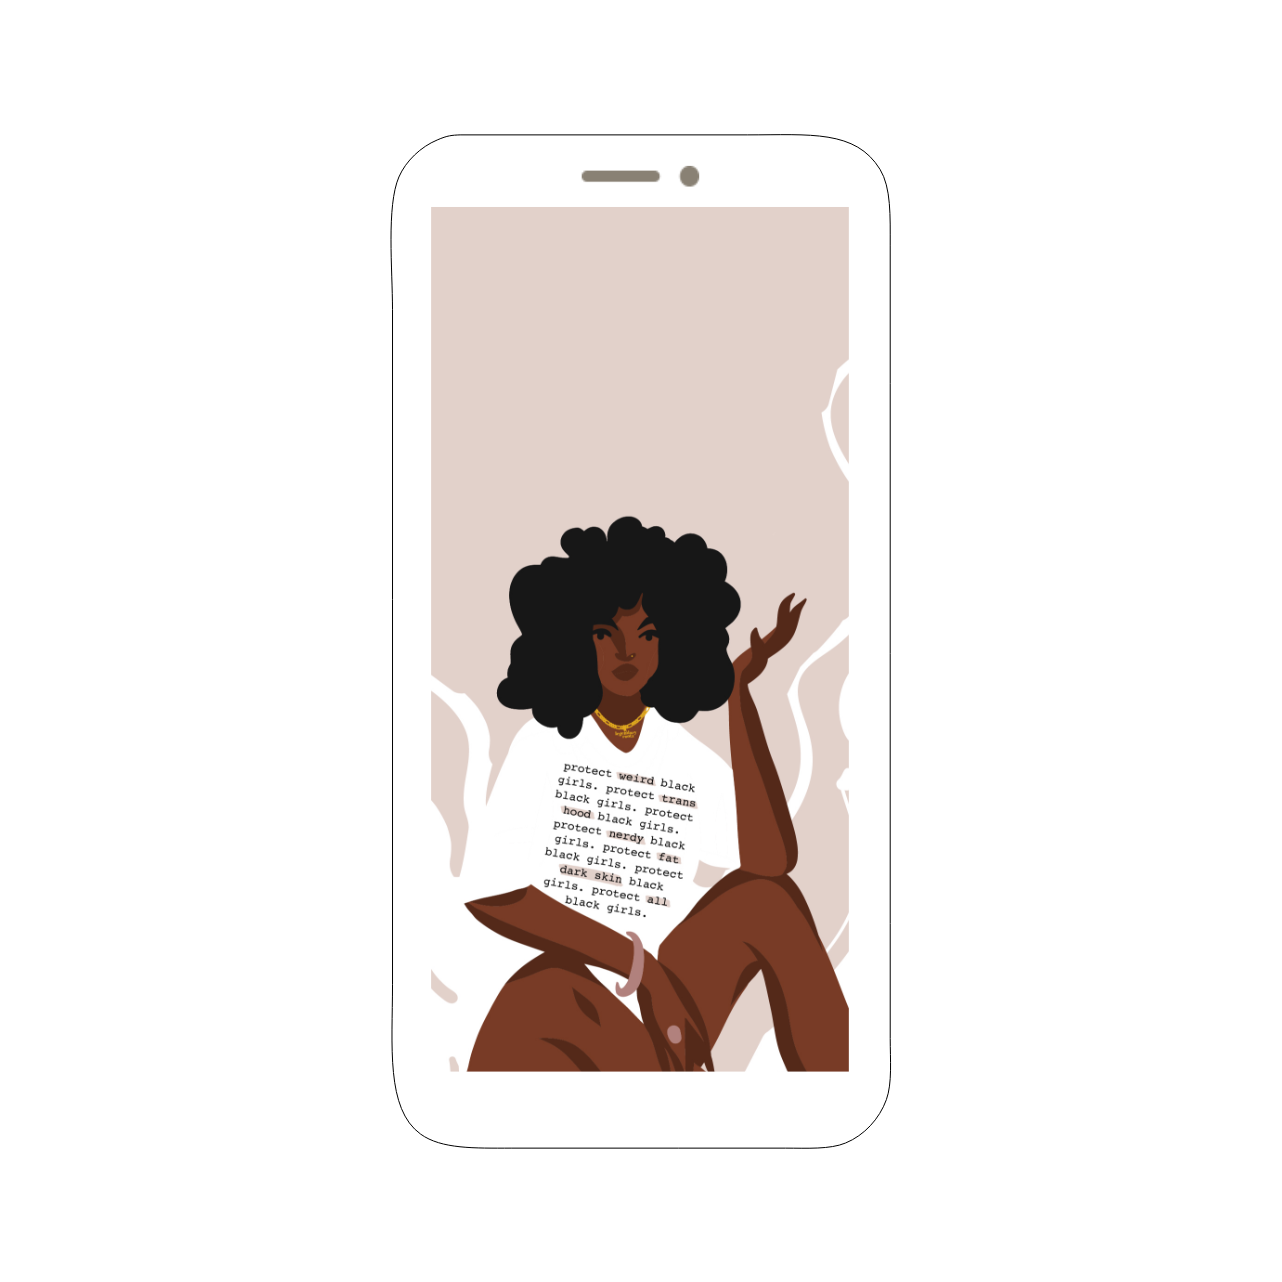 Protect All Black Girls | Wallpaper Pack - Legendary Rootz